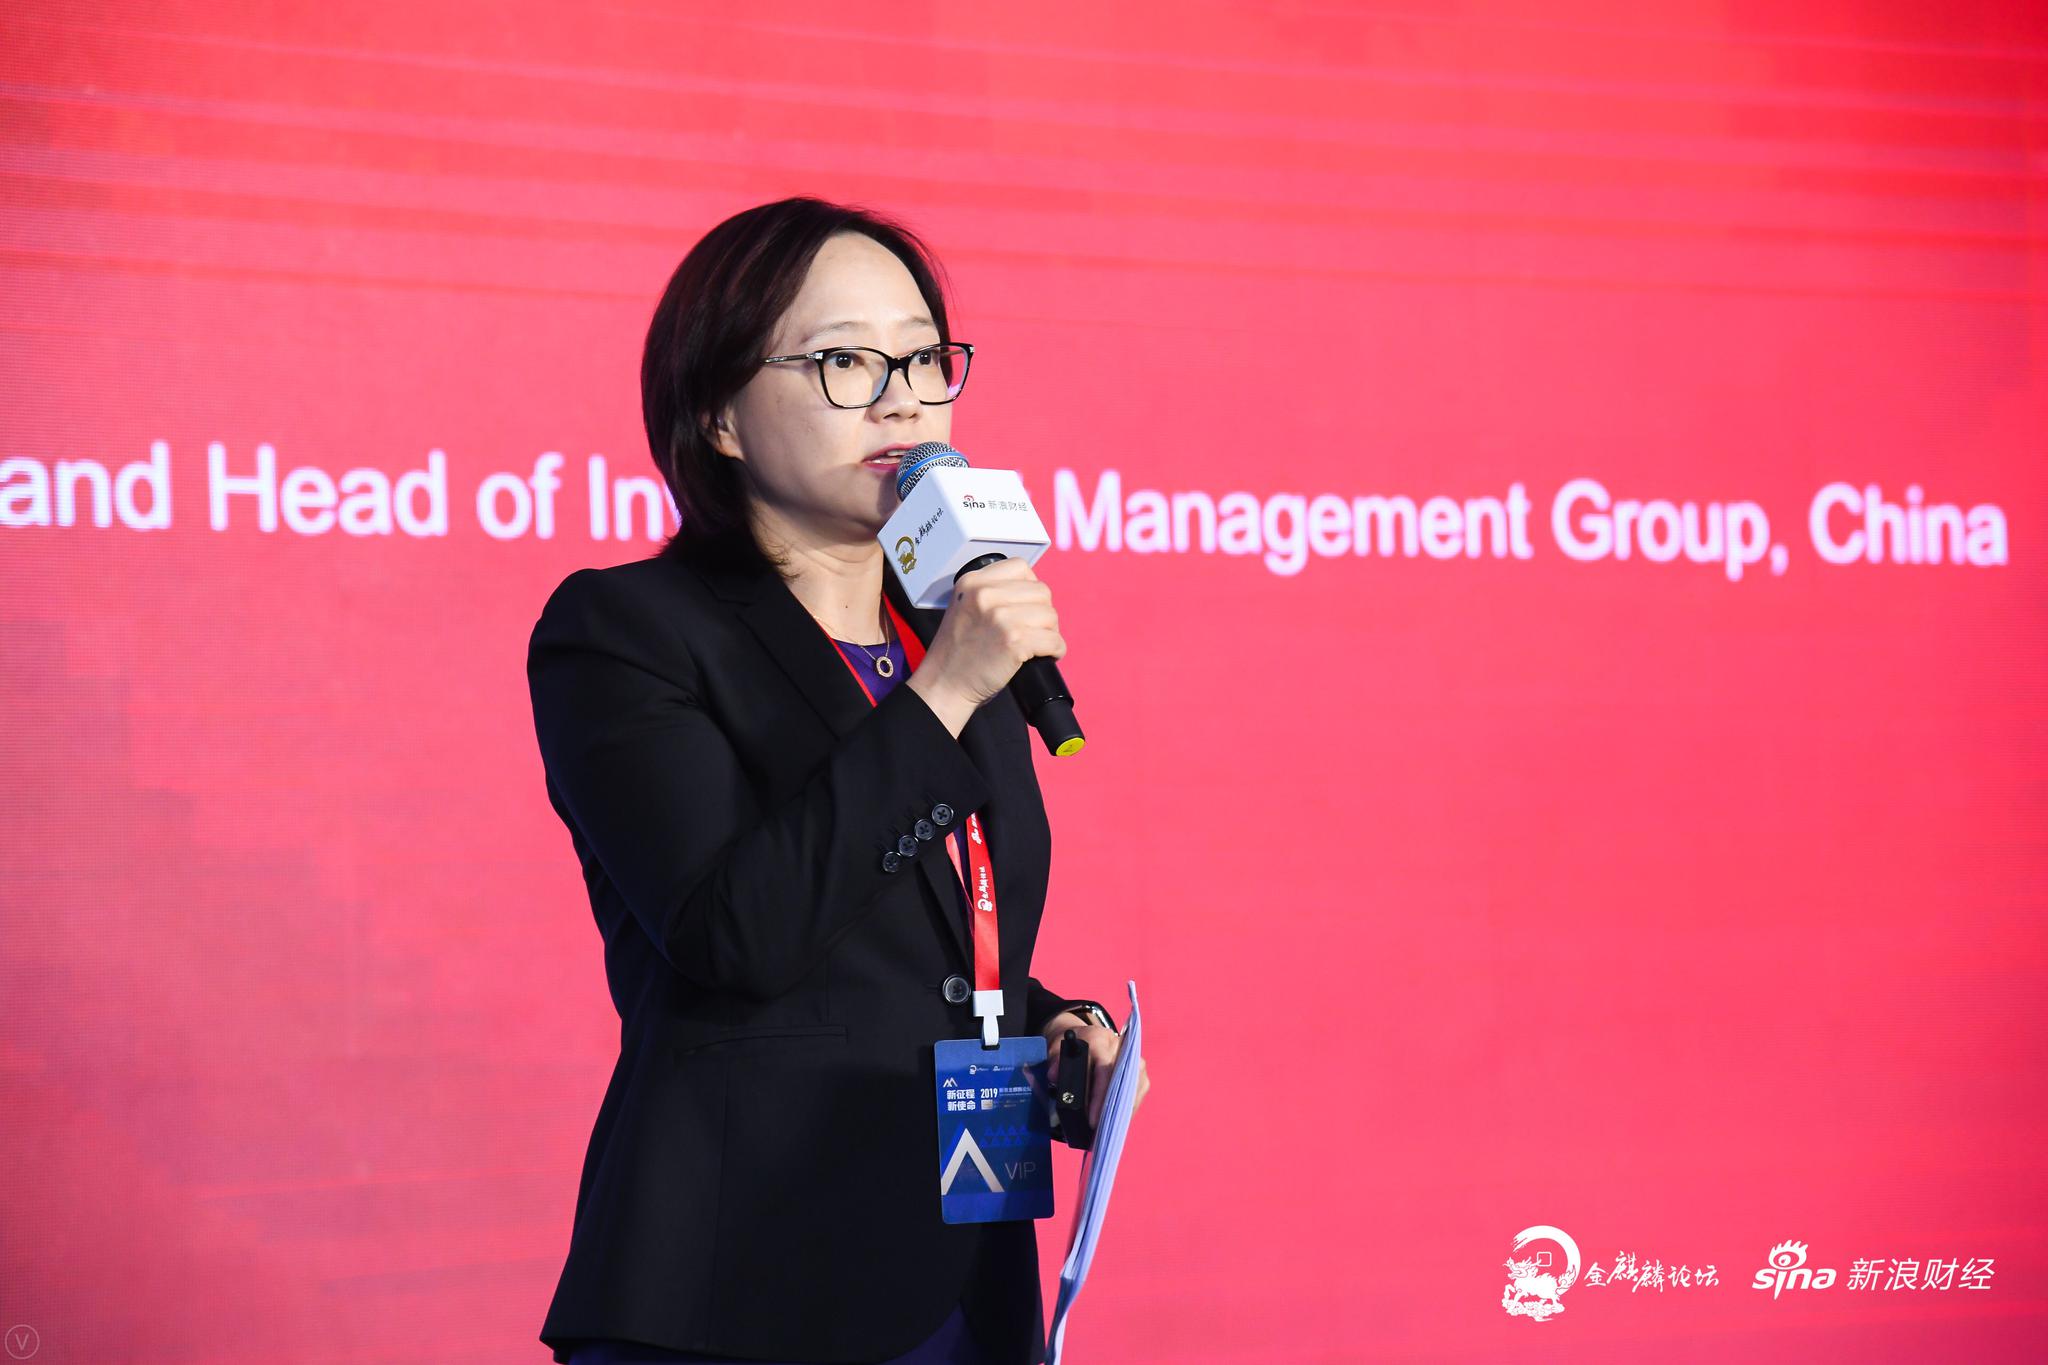 Vanguard集团董事总经理、中国区投资管理部主管浦彦女士